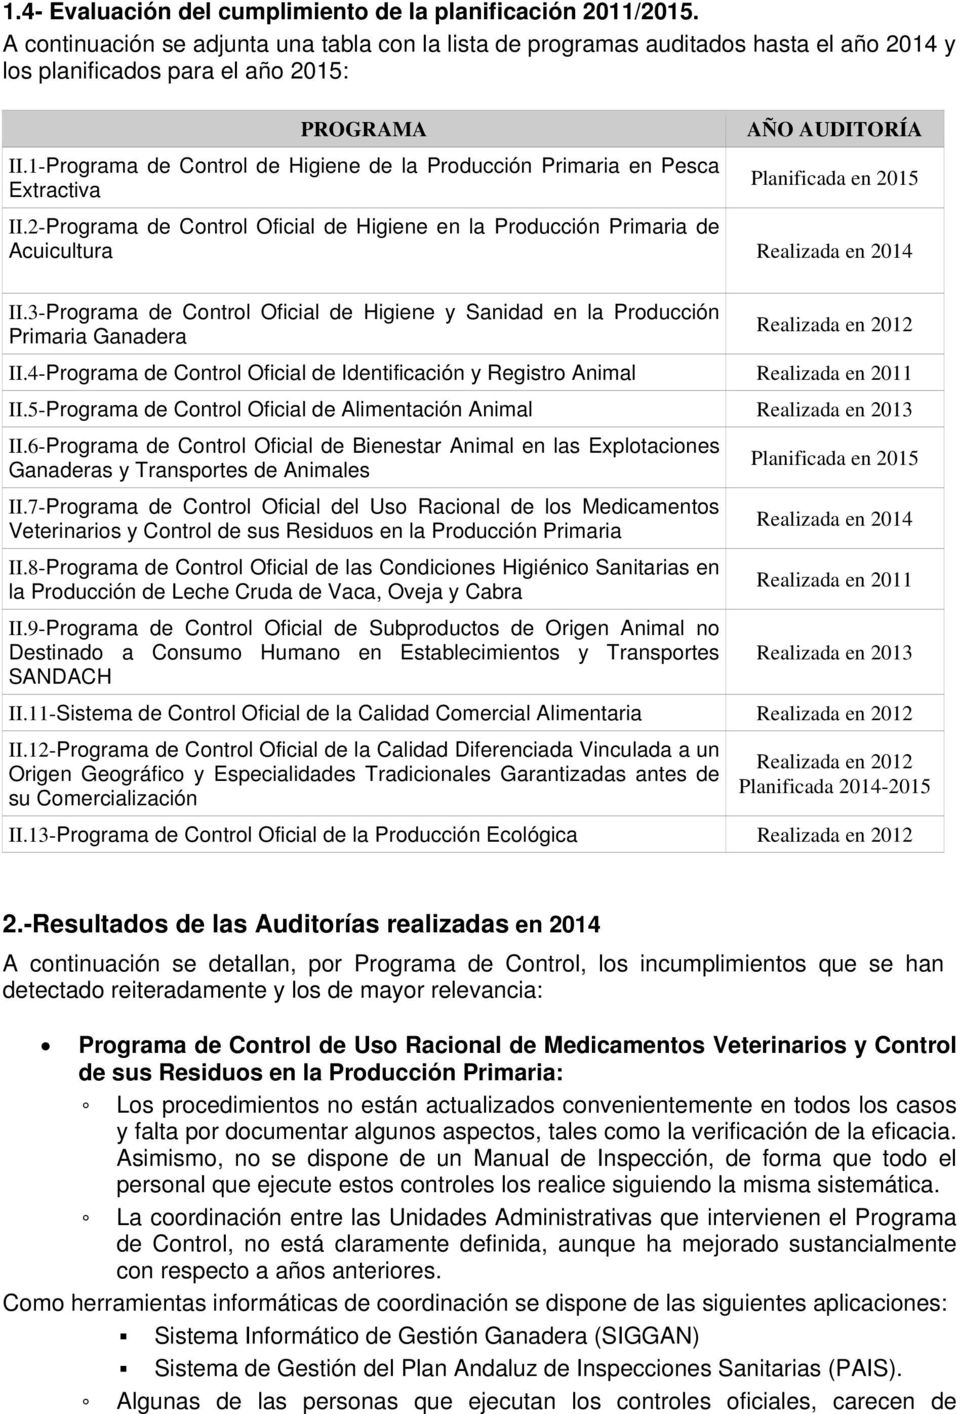 1-Programa de Control de Higiene de la Producción Primaria en Pesca Extractiva AÑO AUDITORÍA Planificada en 2015 II.